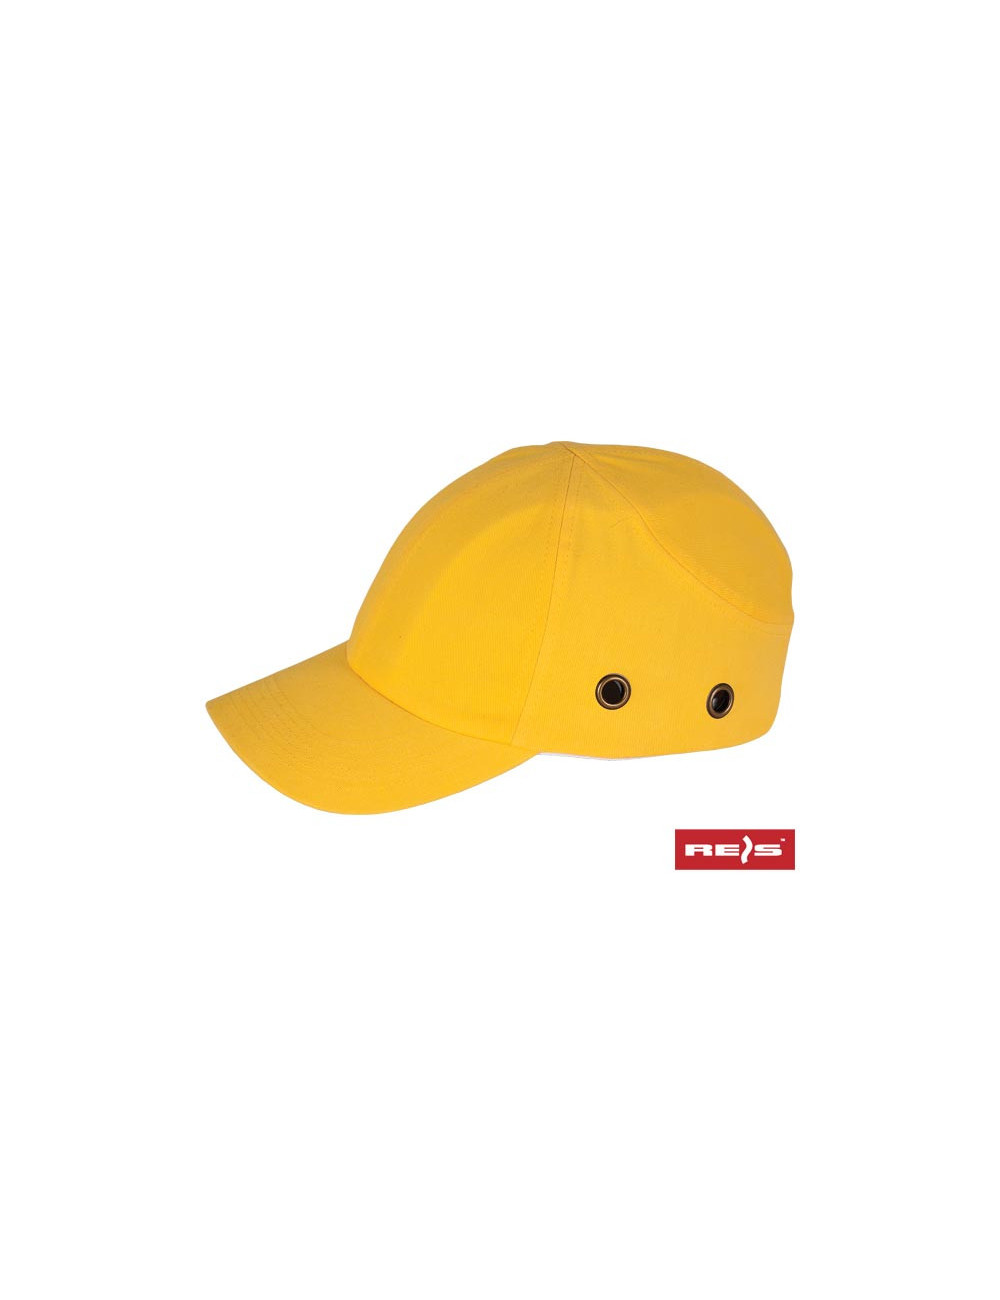 Industrial helmet light bumpcap yellow Reis